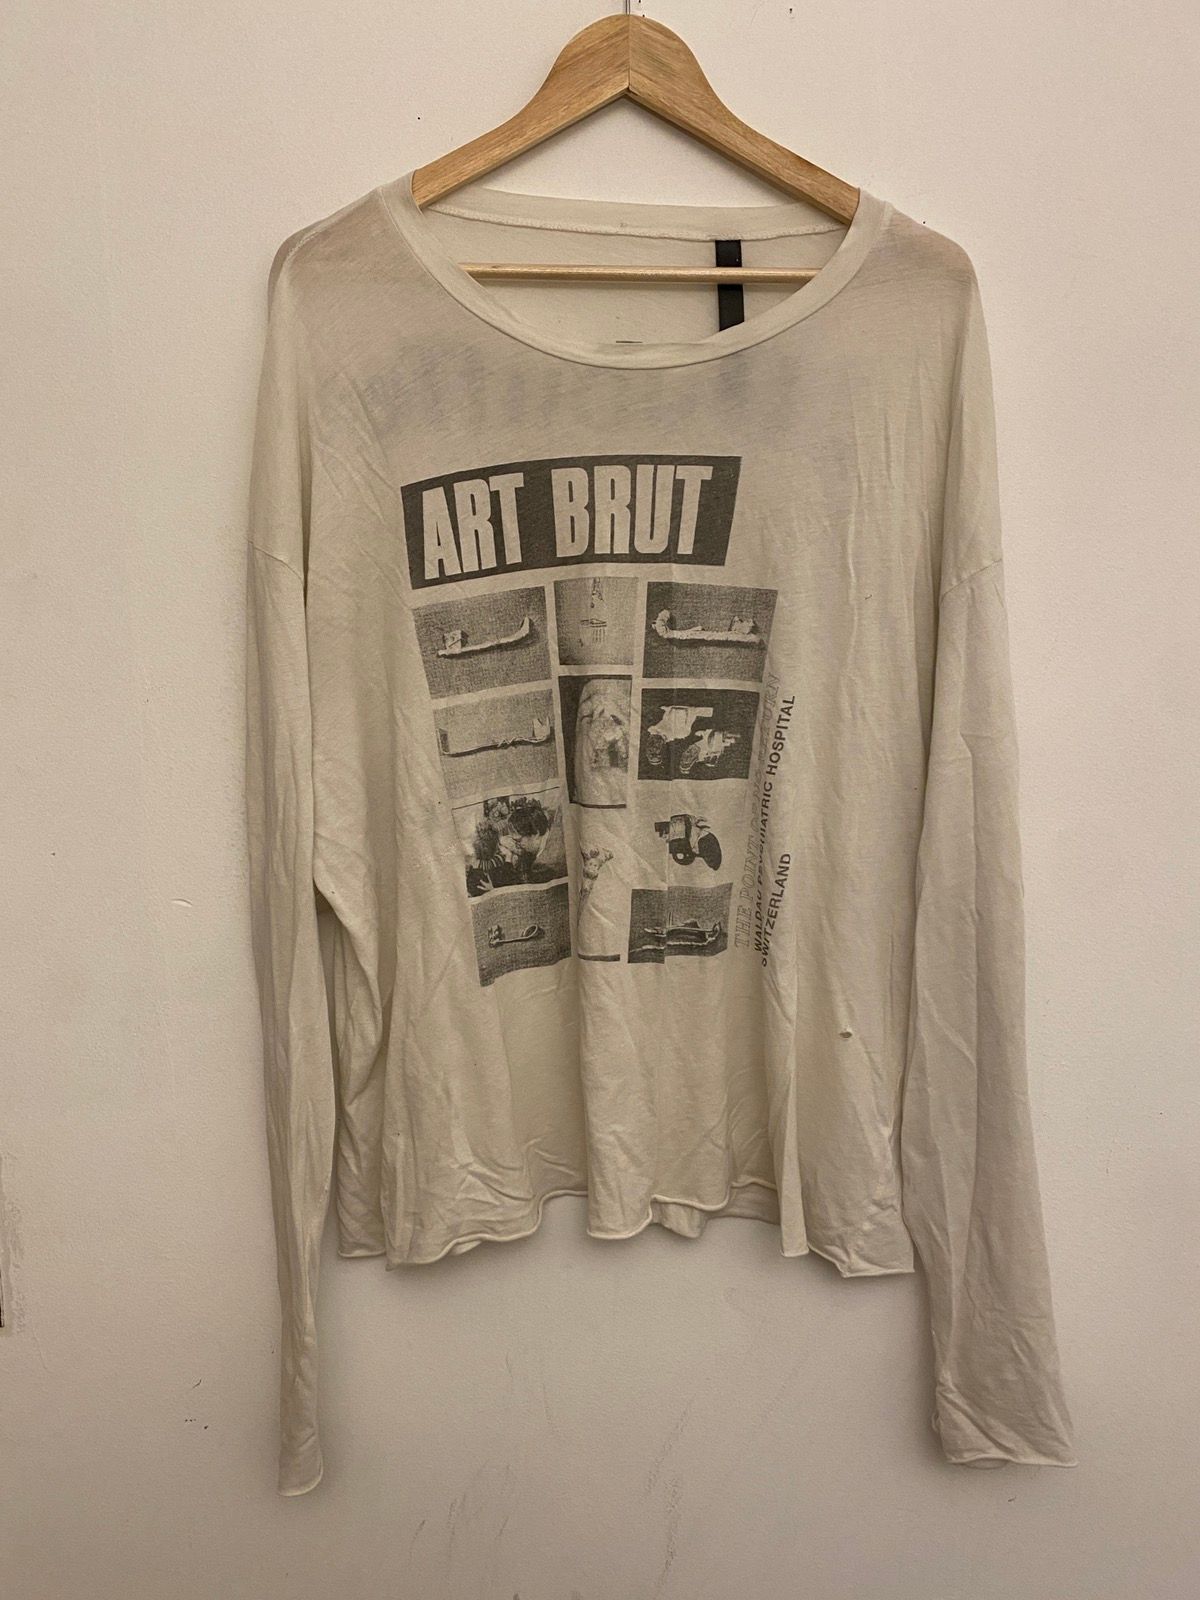 Enfants Riches Deprimes Art Brut Long sleeve T Shirt Size US XL / EU 56 / 4 - 1 Preview